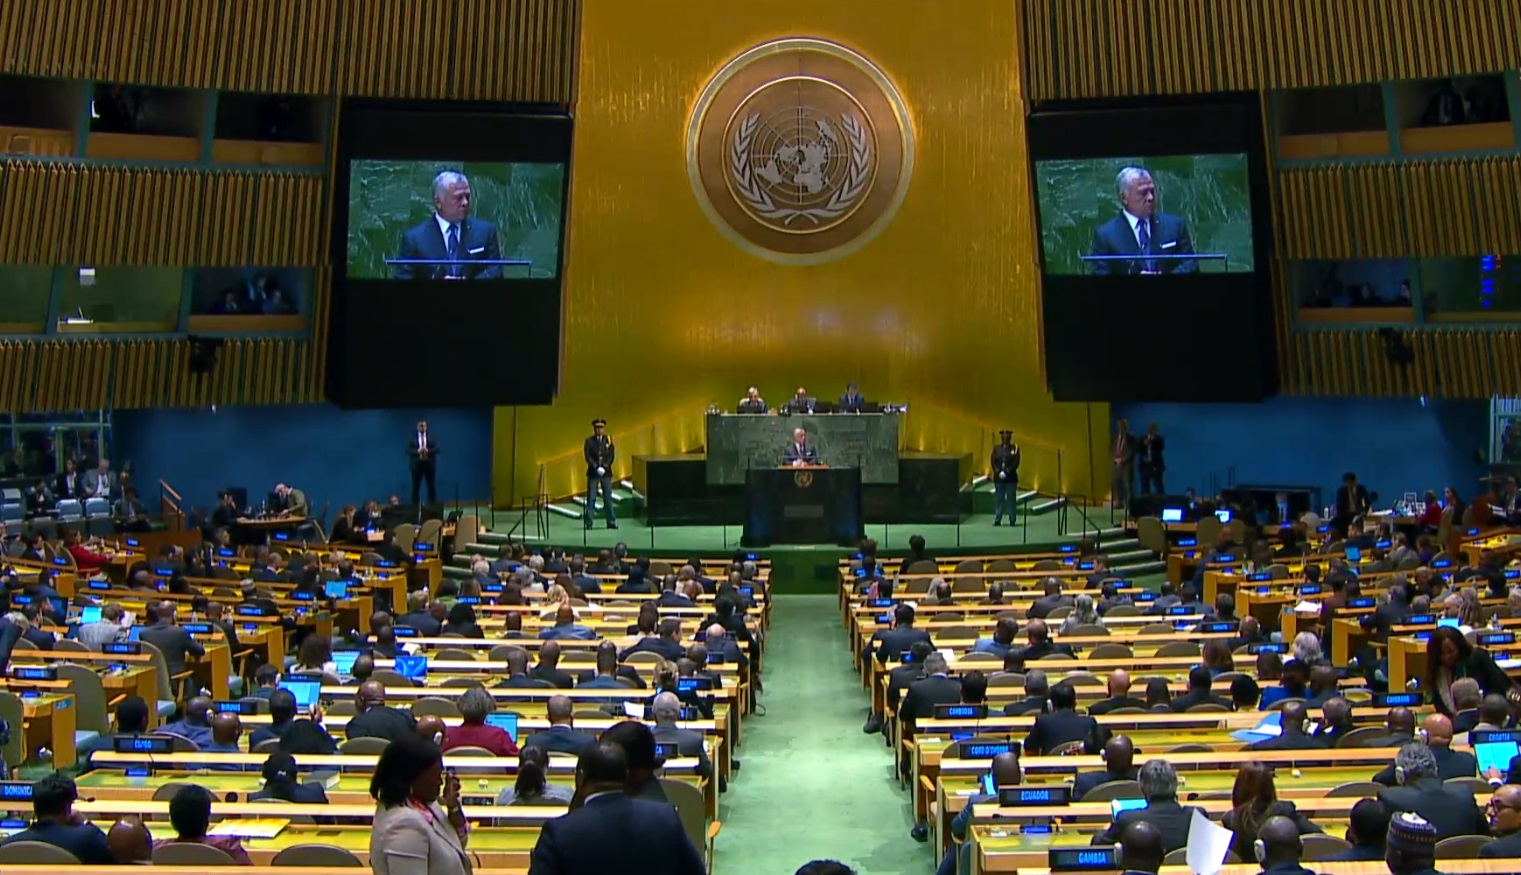 الملك من الأمم المتحدة: سنحمي بلدنا من أية تهديدات مستقبلية تمس أمننا الوطني جراء الأزمة السورية - فيديو